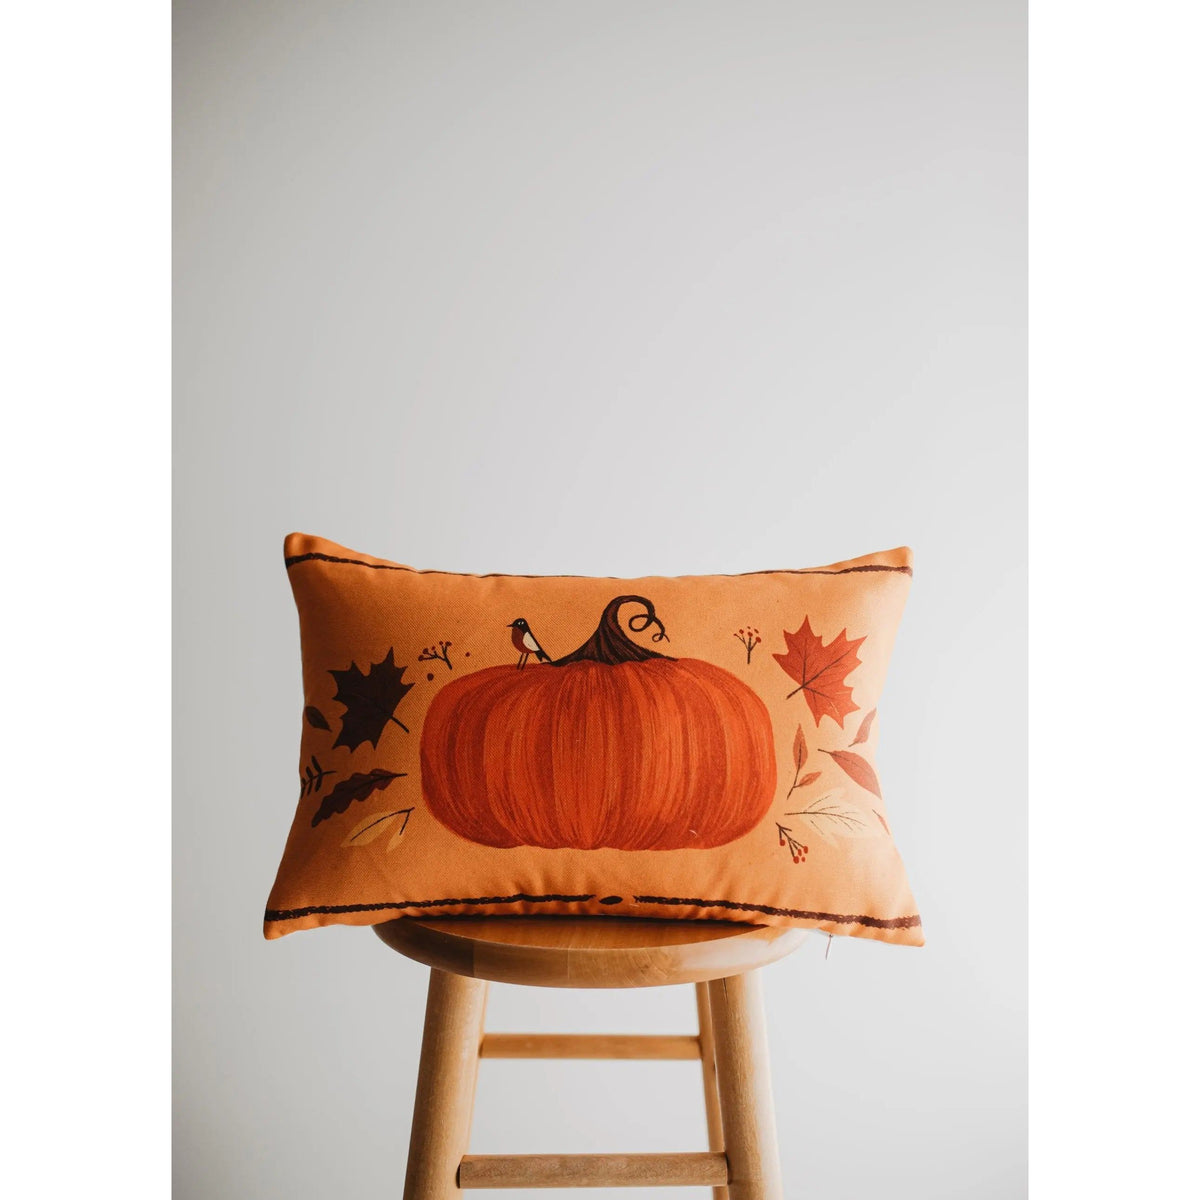 Thankful Pumpkin Wreath Pillow | Pillow Cover